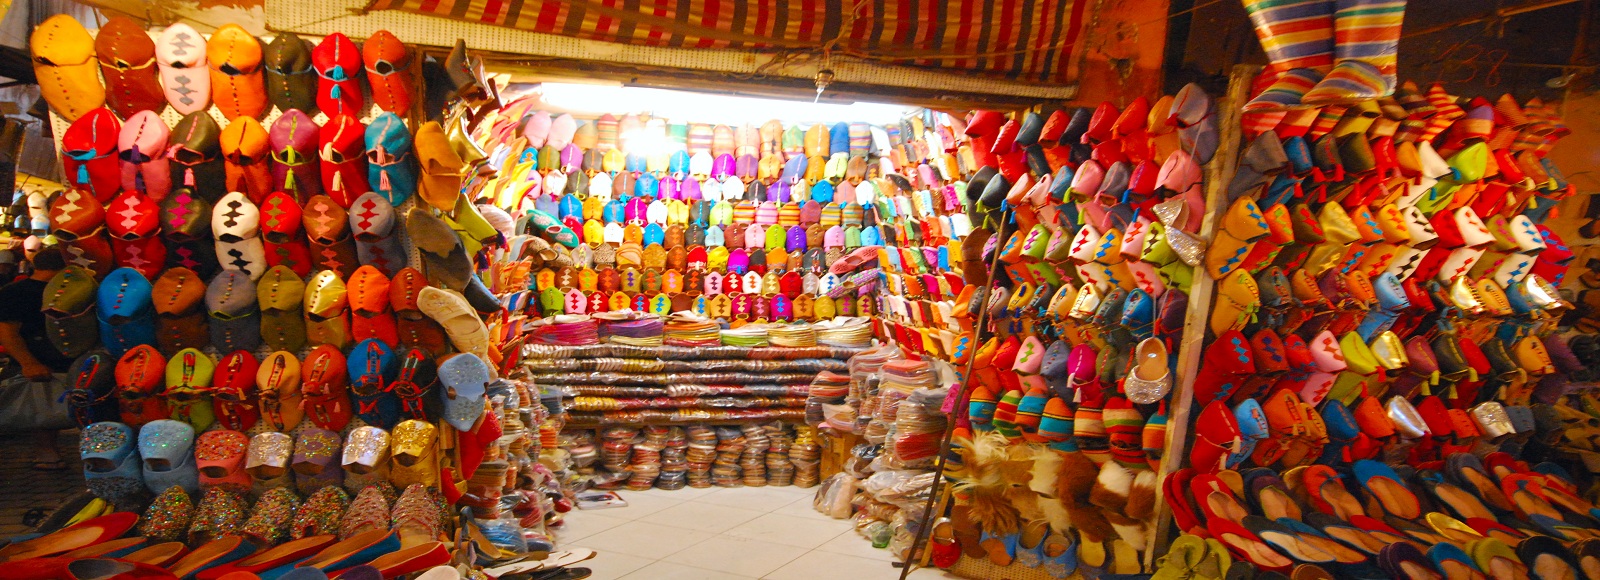 Ofertas de Traslados en Marrakech. Traslados económicos en Marrakech 